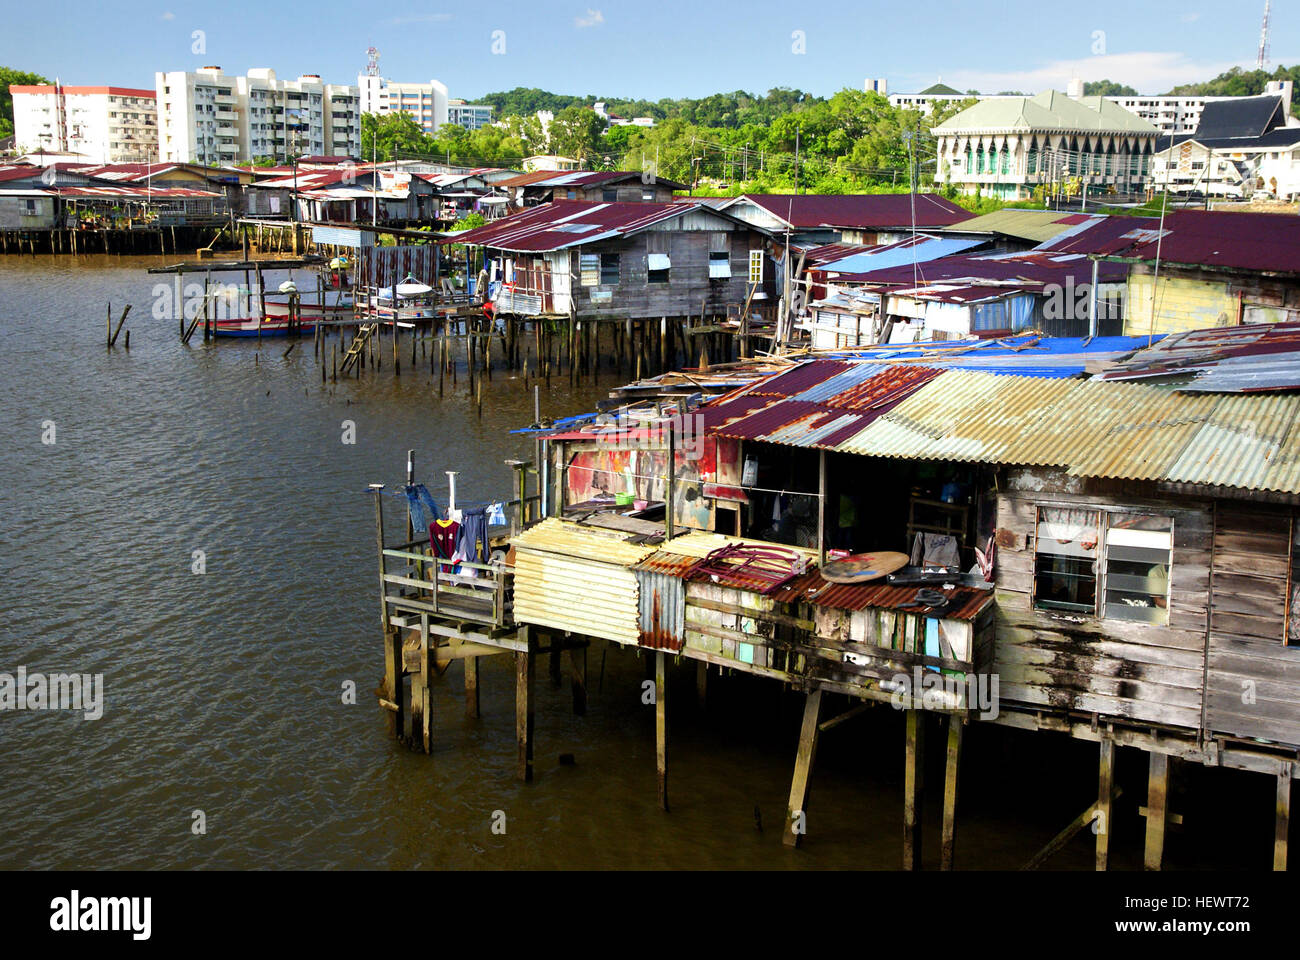 Il villaggio di acqua (o Kampong Ayer in Malay) è un insediamento di acqua che ospita circa 30.000 persone -- la metà della popolazione di Bandr Seri Bagawan. Tutti gli edifici sono costruiti nel corso del fiume Brunei, stand su palafitte e collegati da circa 36 km di passerelle. In legno lungo le barche di velocità, (i taxi d'acqua), di servire come mezzo di trasporto rapido per il villaggio d'acqua. A distanza il villaggio di acqua appare come una delle baraccopoli ma ha moschee, ristoranti, negozi anche di una scuola e di un ospedale. Essa gode di moderni servizi come elettricità, idrosanitari, aria condizionata, televisione satellitare e accesso a Internet. Foto Stock